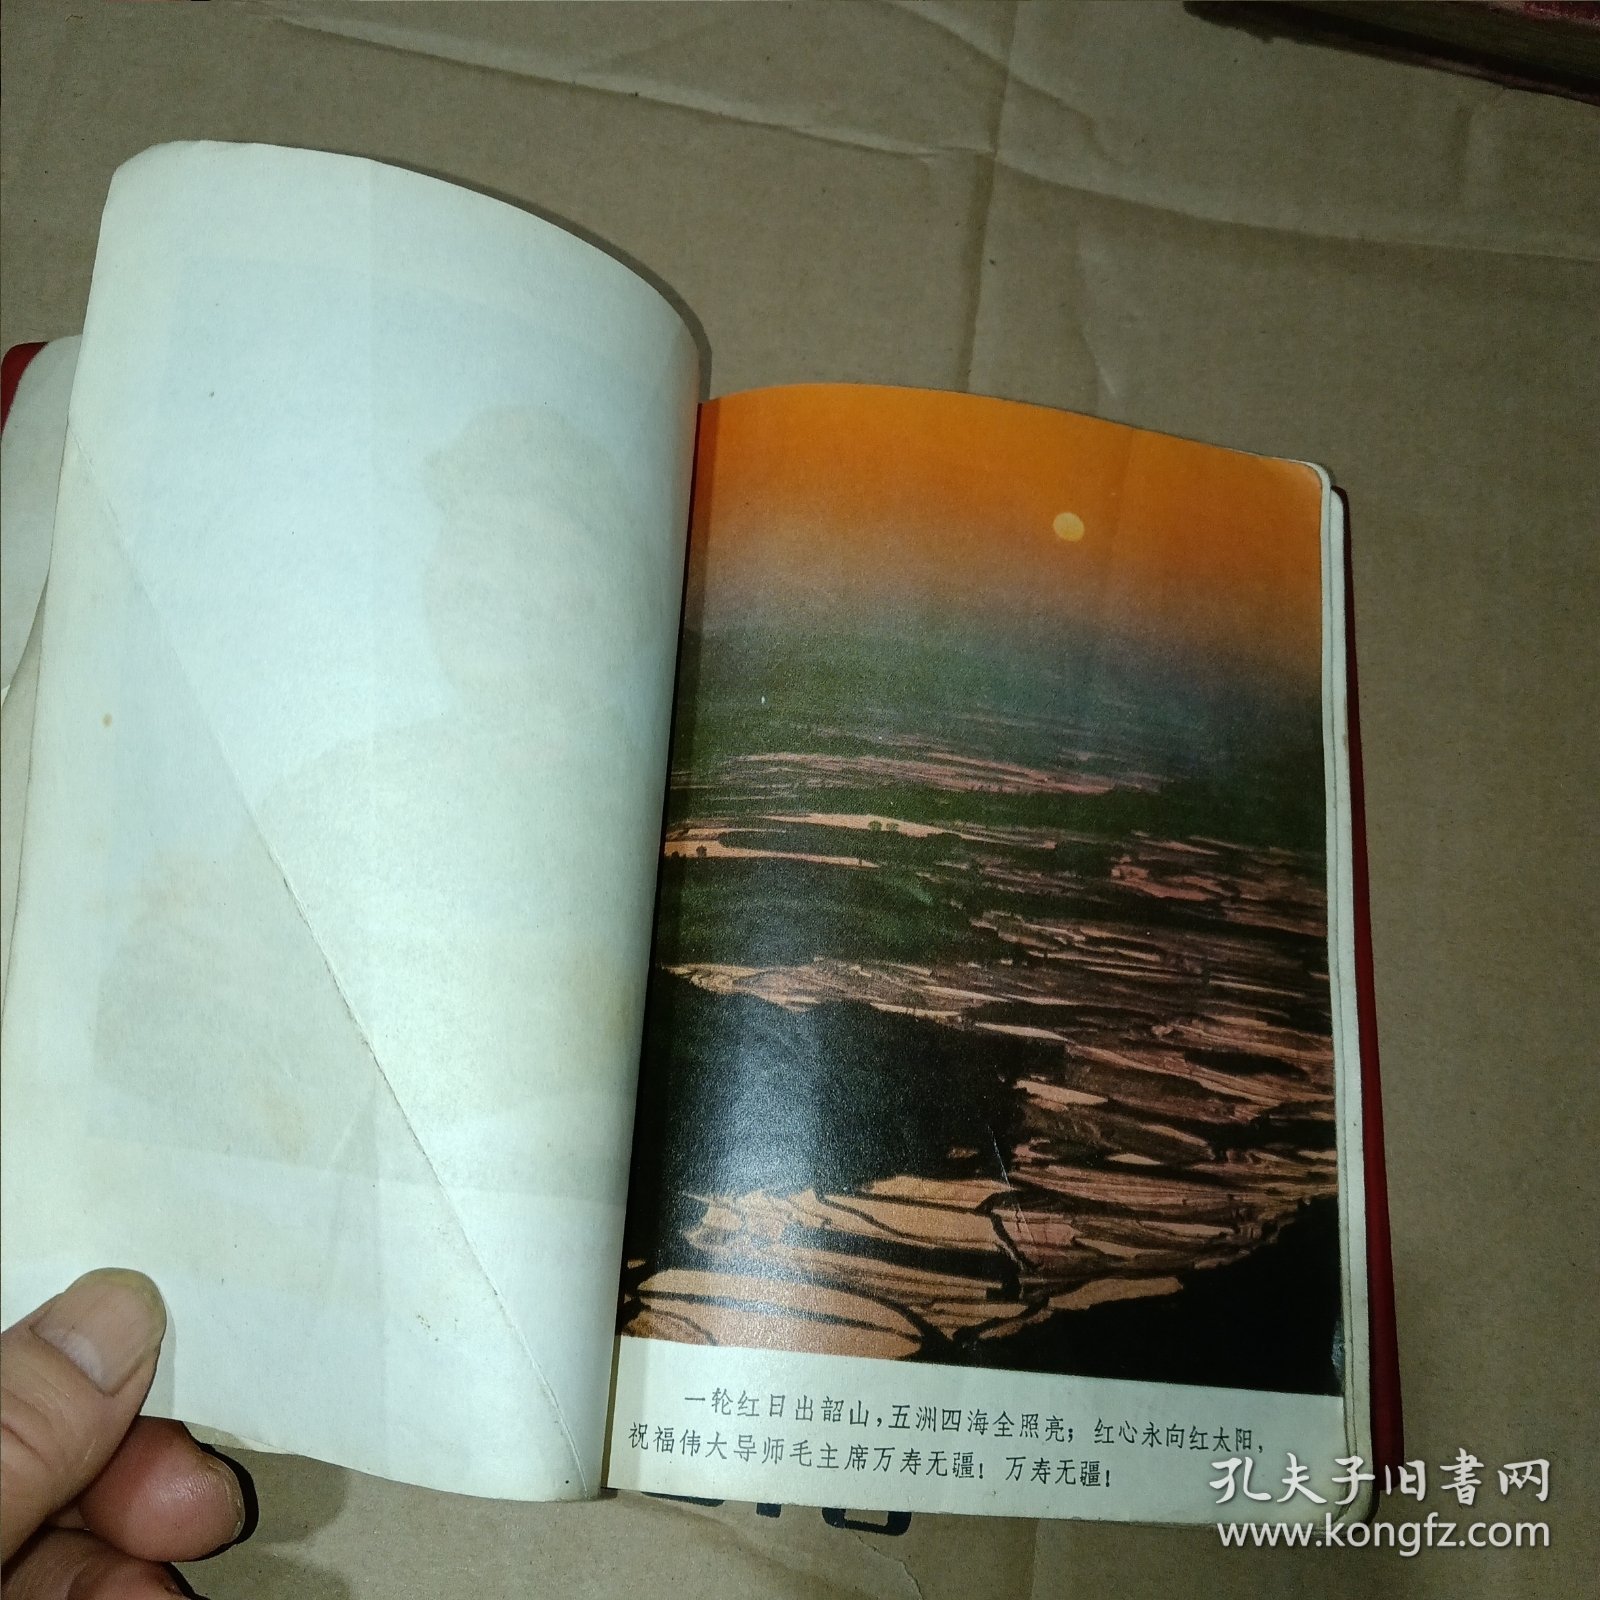 老日记本 韶山日记 （红塑皮配的，带主席像、语录、多张插图 插图上有语录）1969年11月 36开